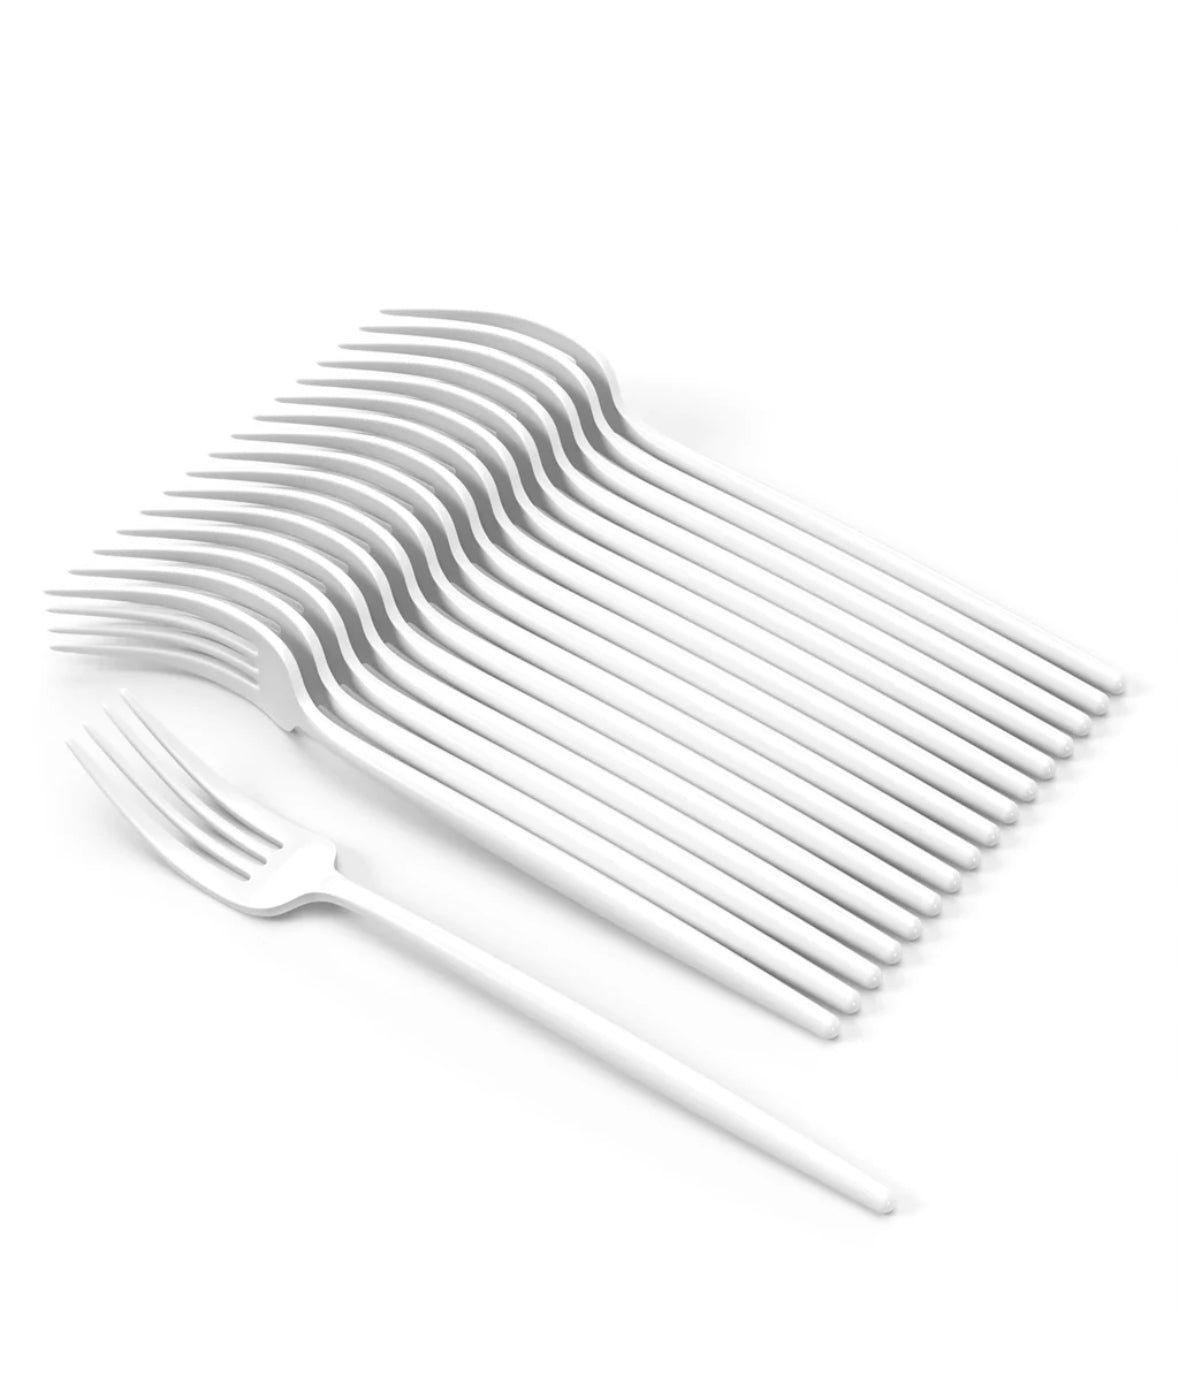 Trendables Gloss White Plastic Forks (20 Ct)